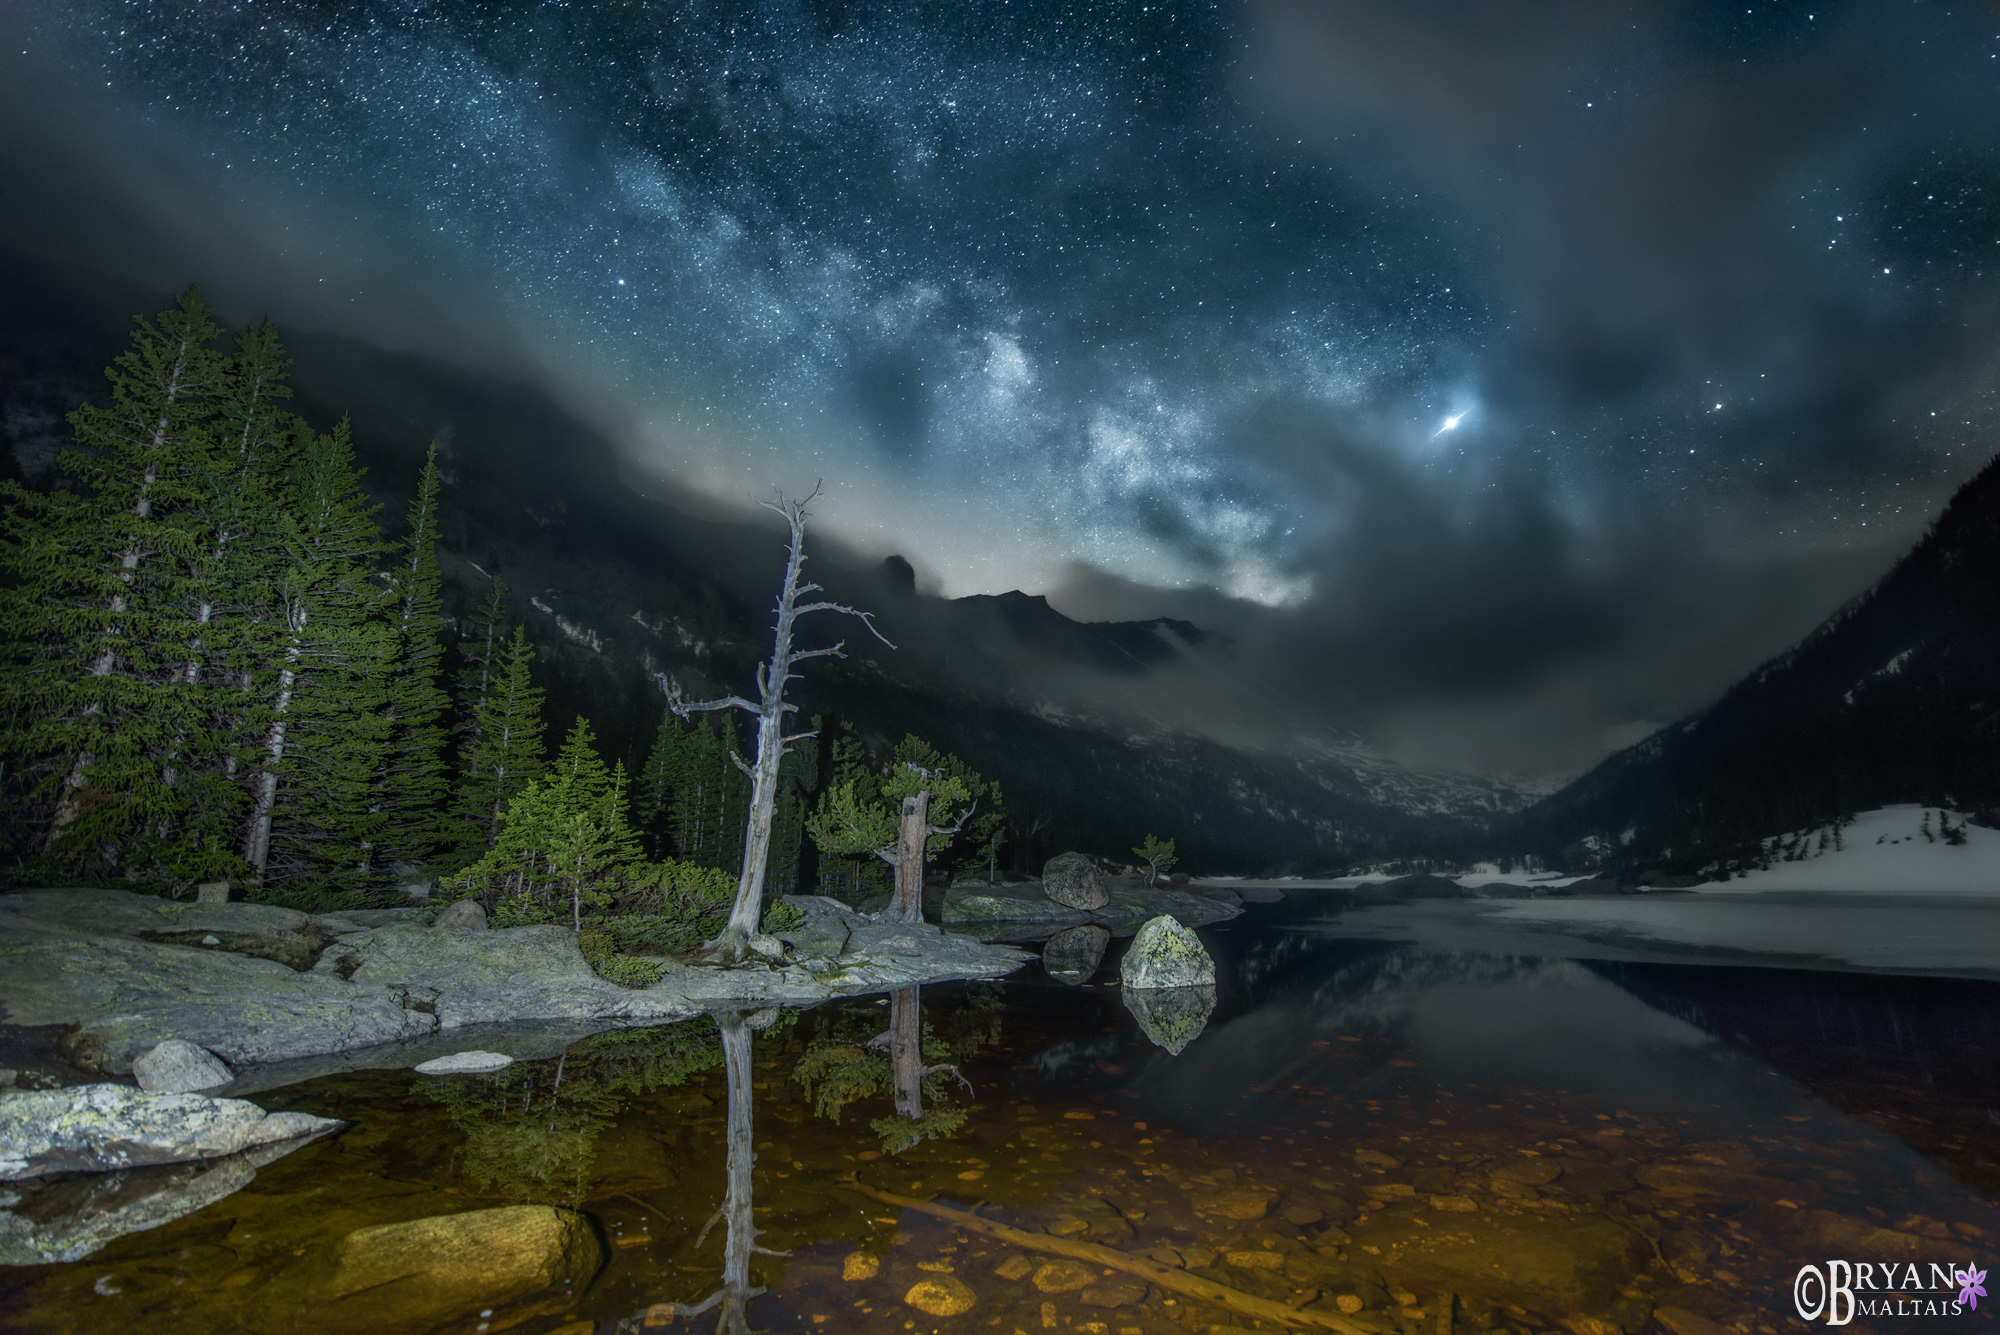 RMNP Milky Way Colorado Landscape Photos